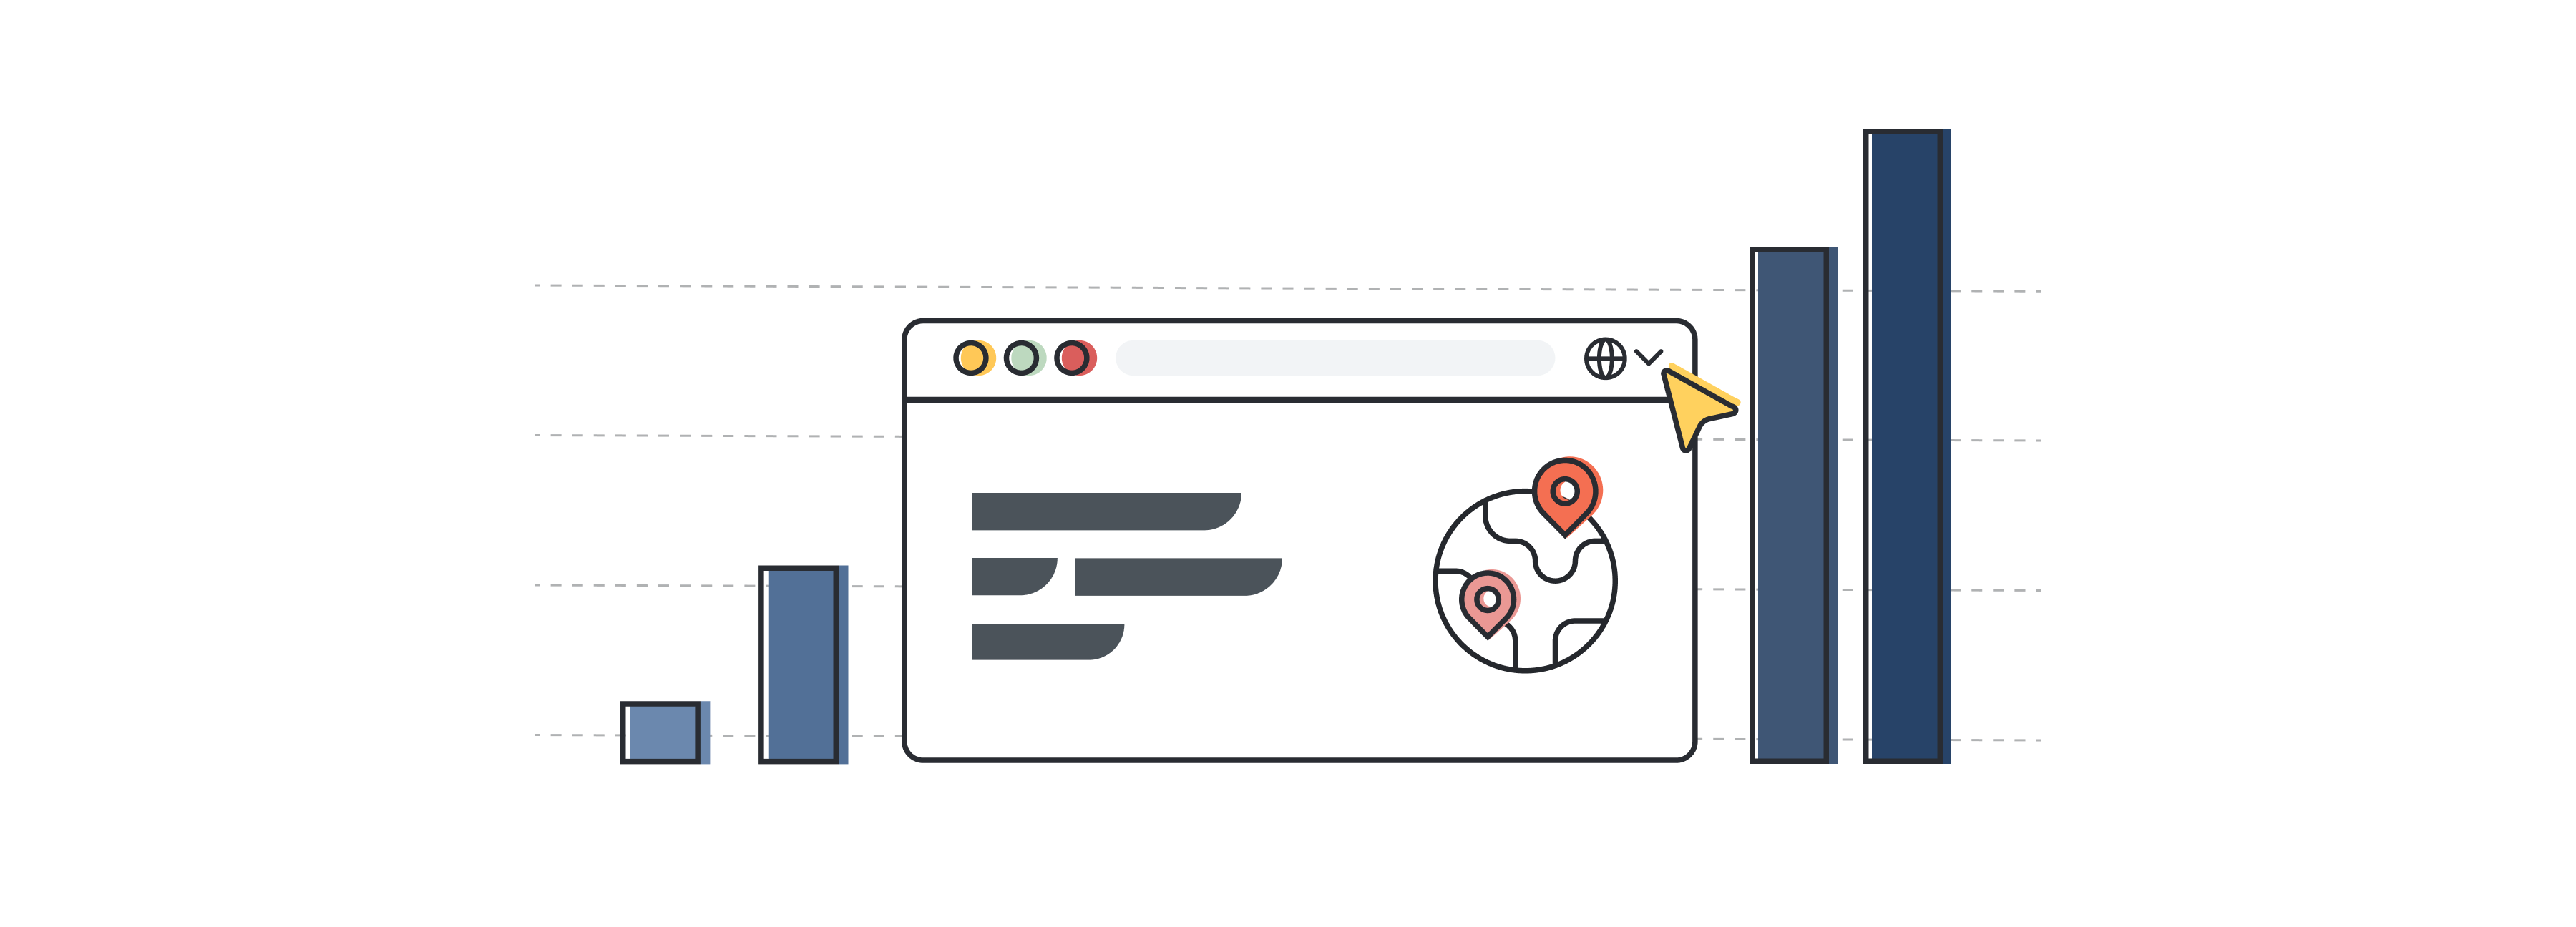 ilustração de uma interface de website que representa o setor de localização e tradução com barras mostrando o crescimento